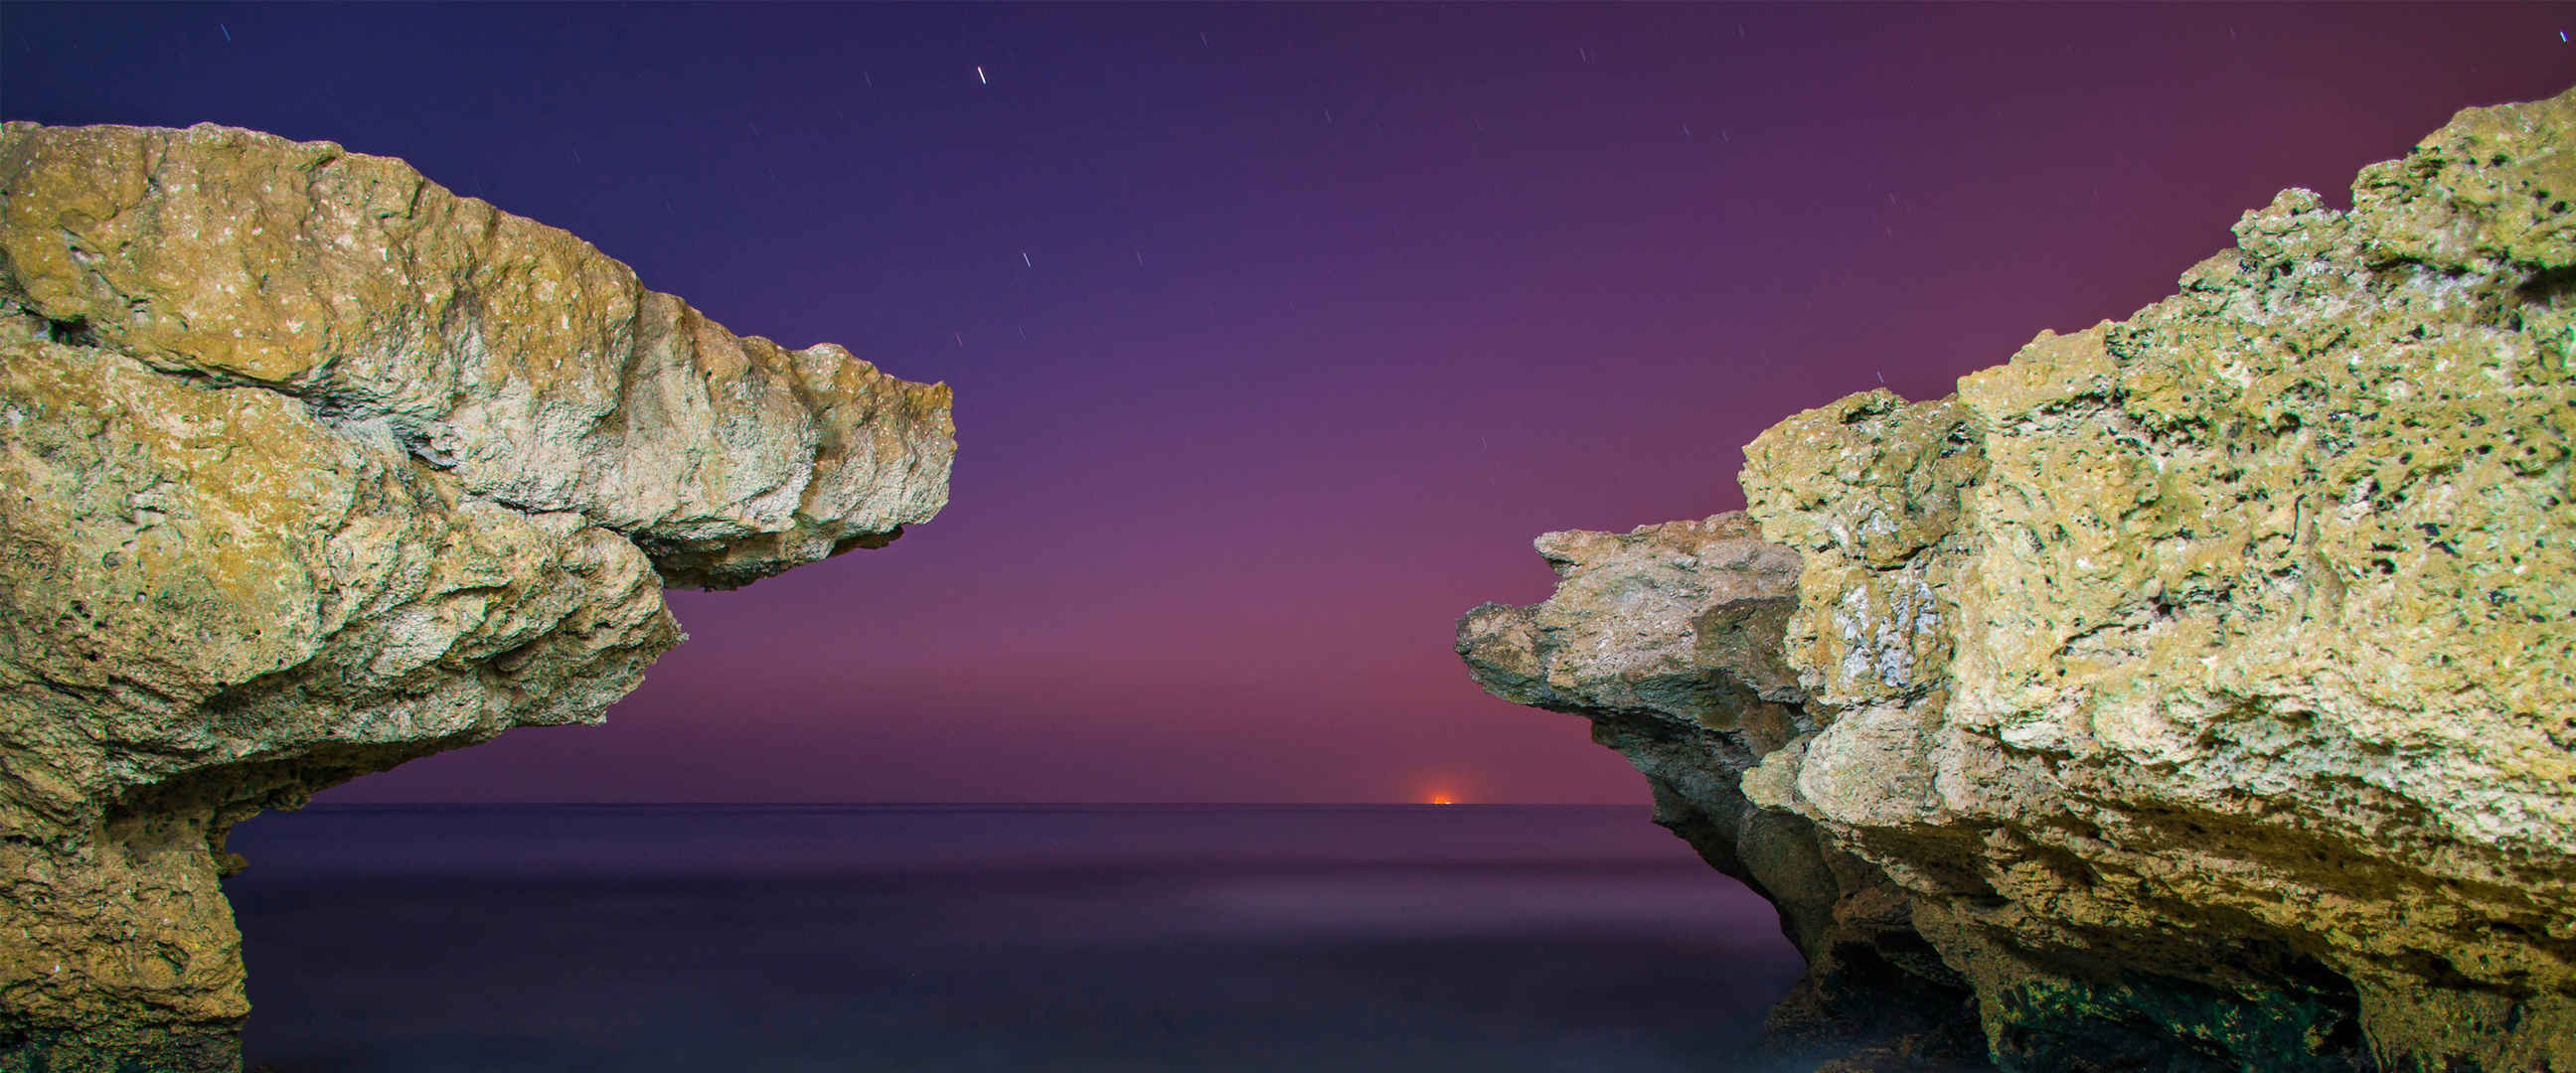 月光下岩石聚焦图片